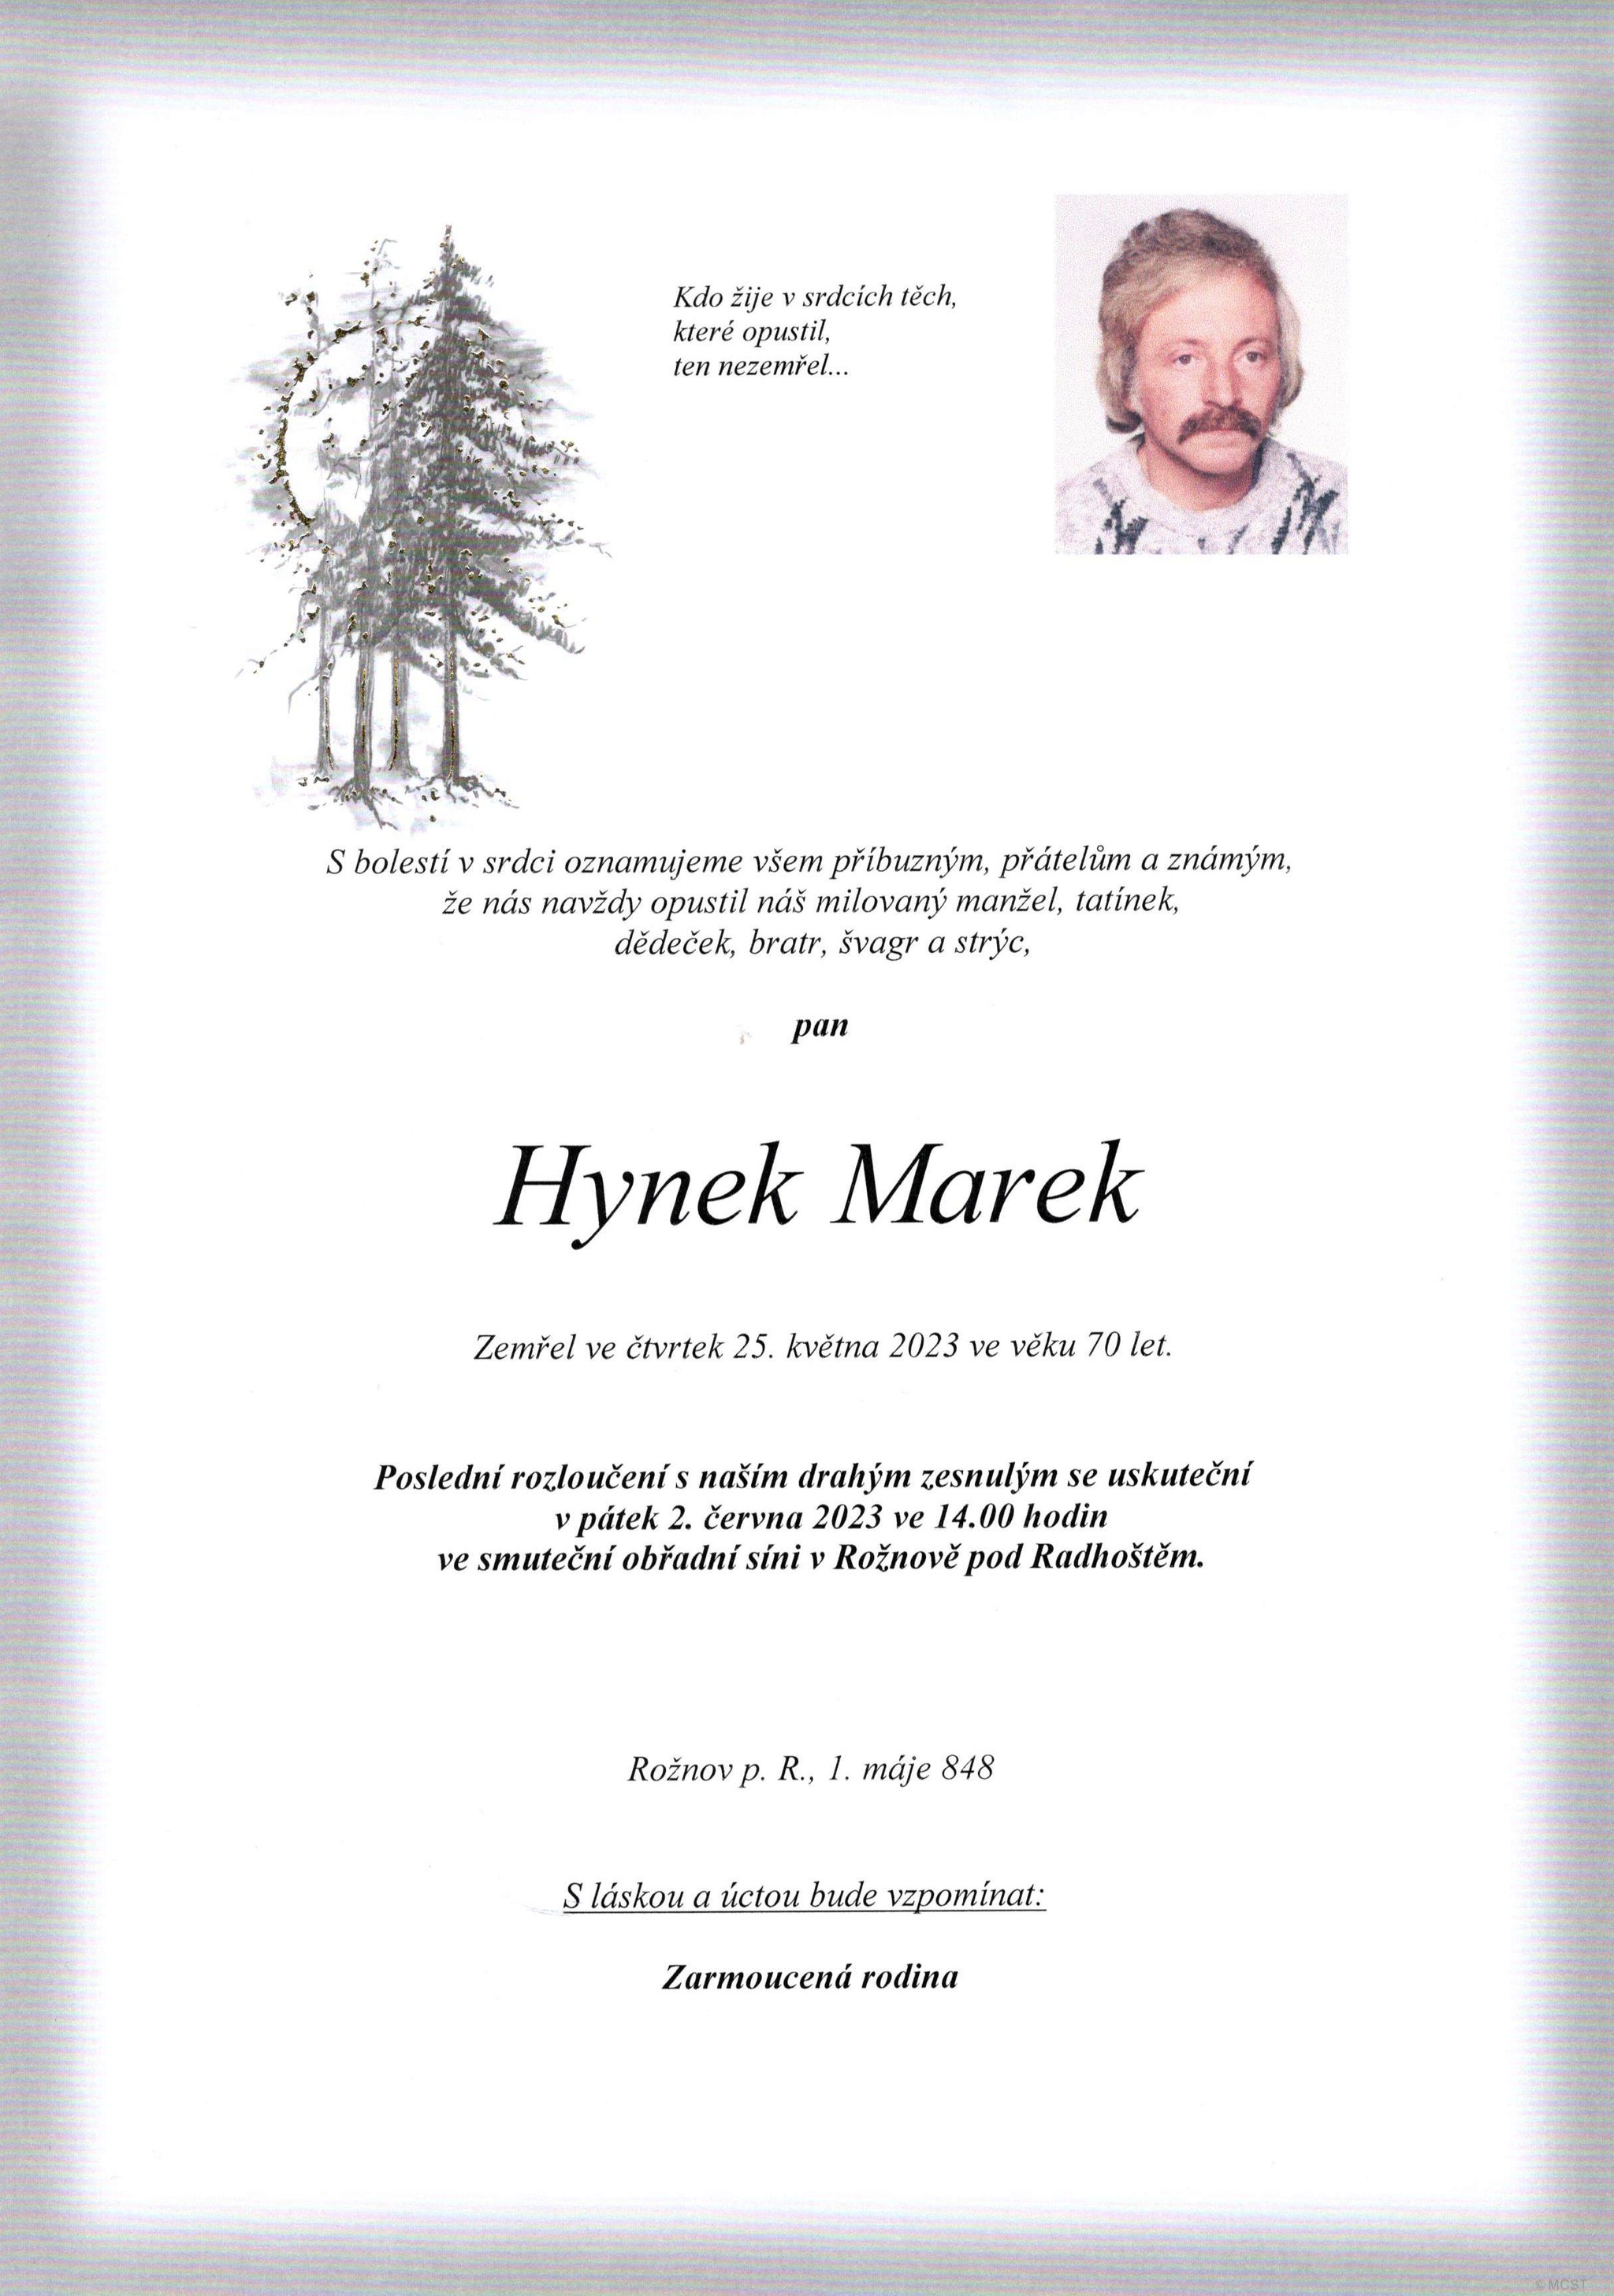 Hynek Marek